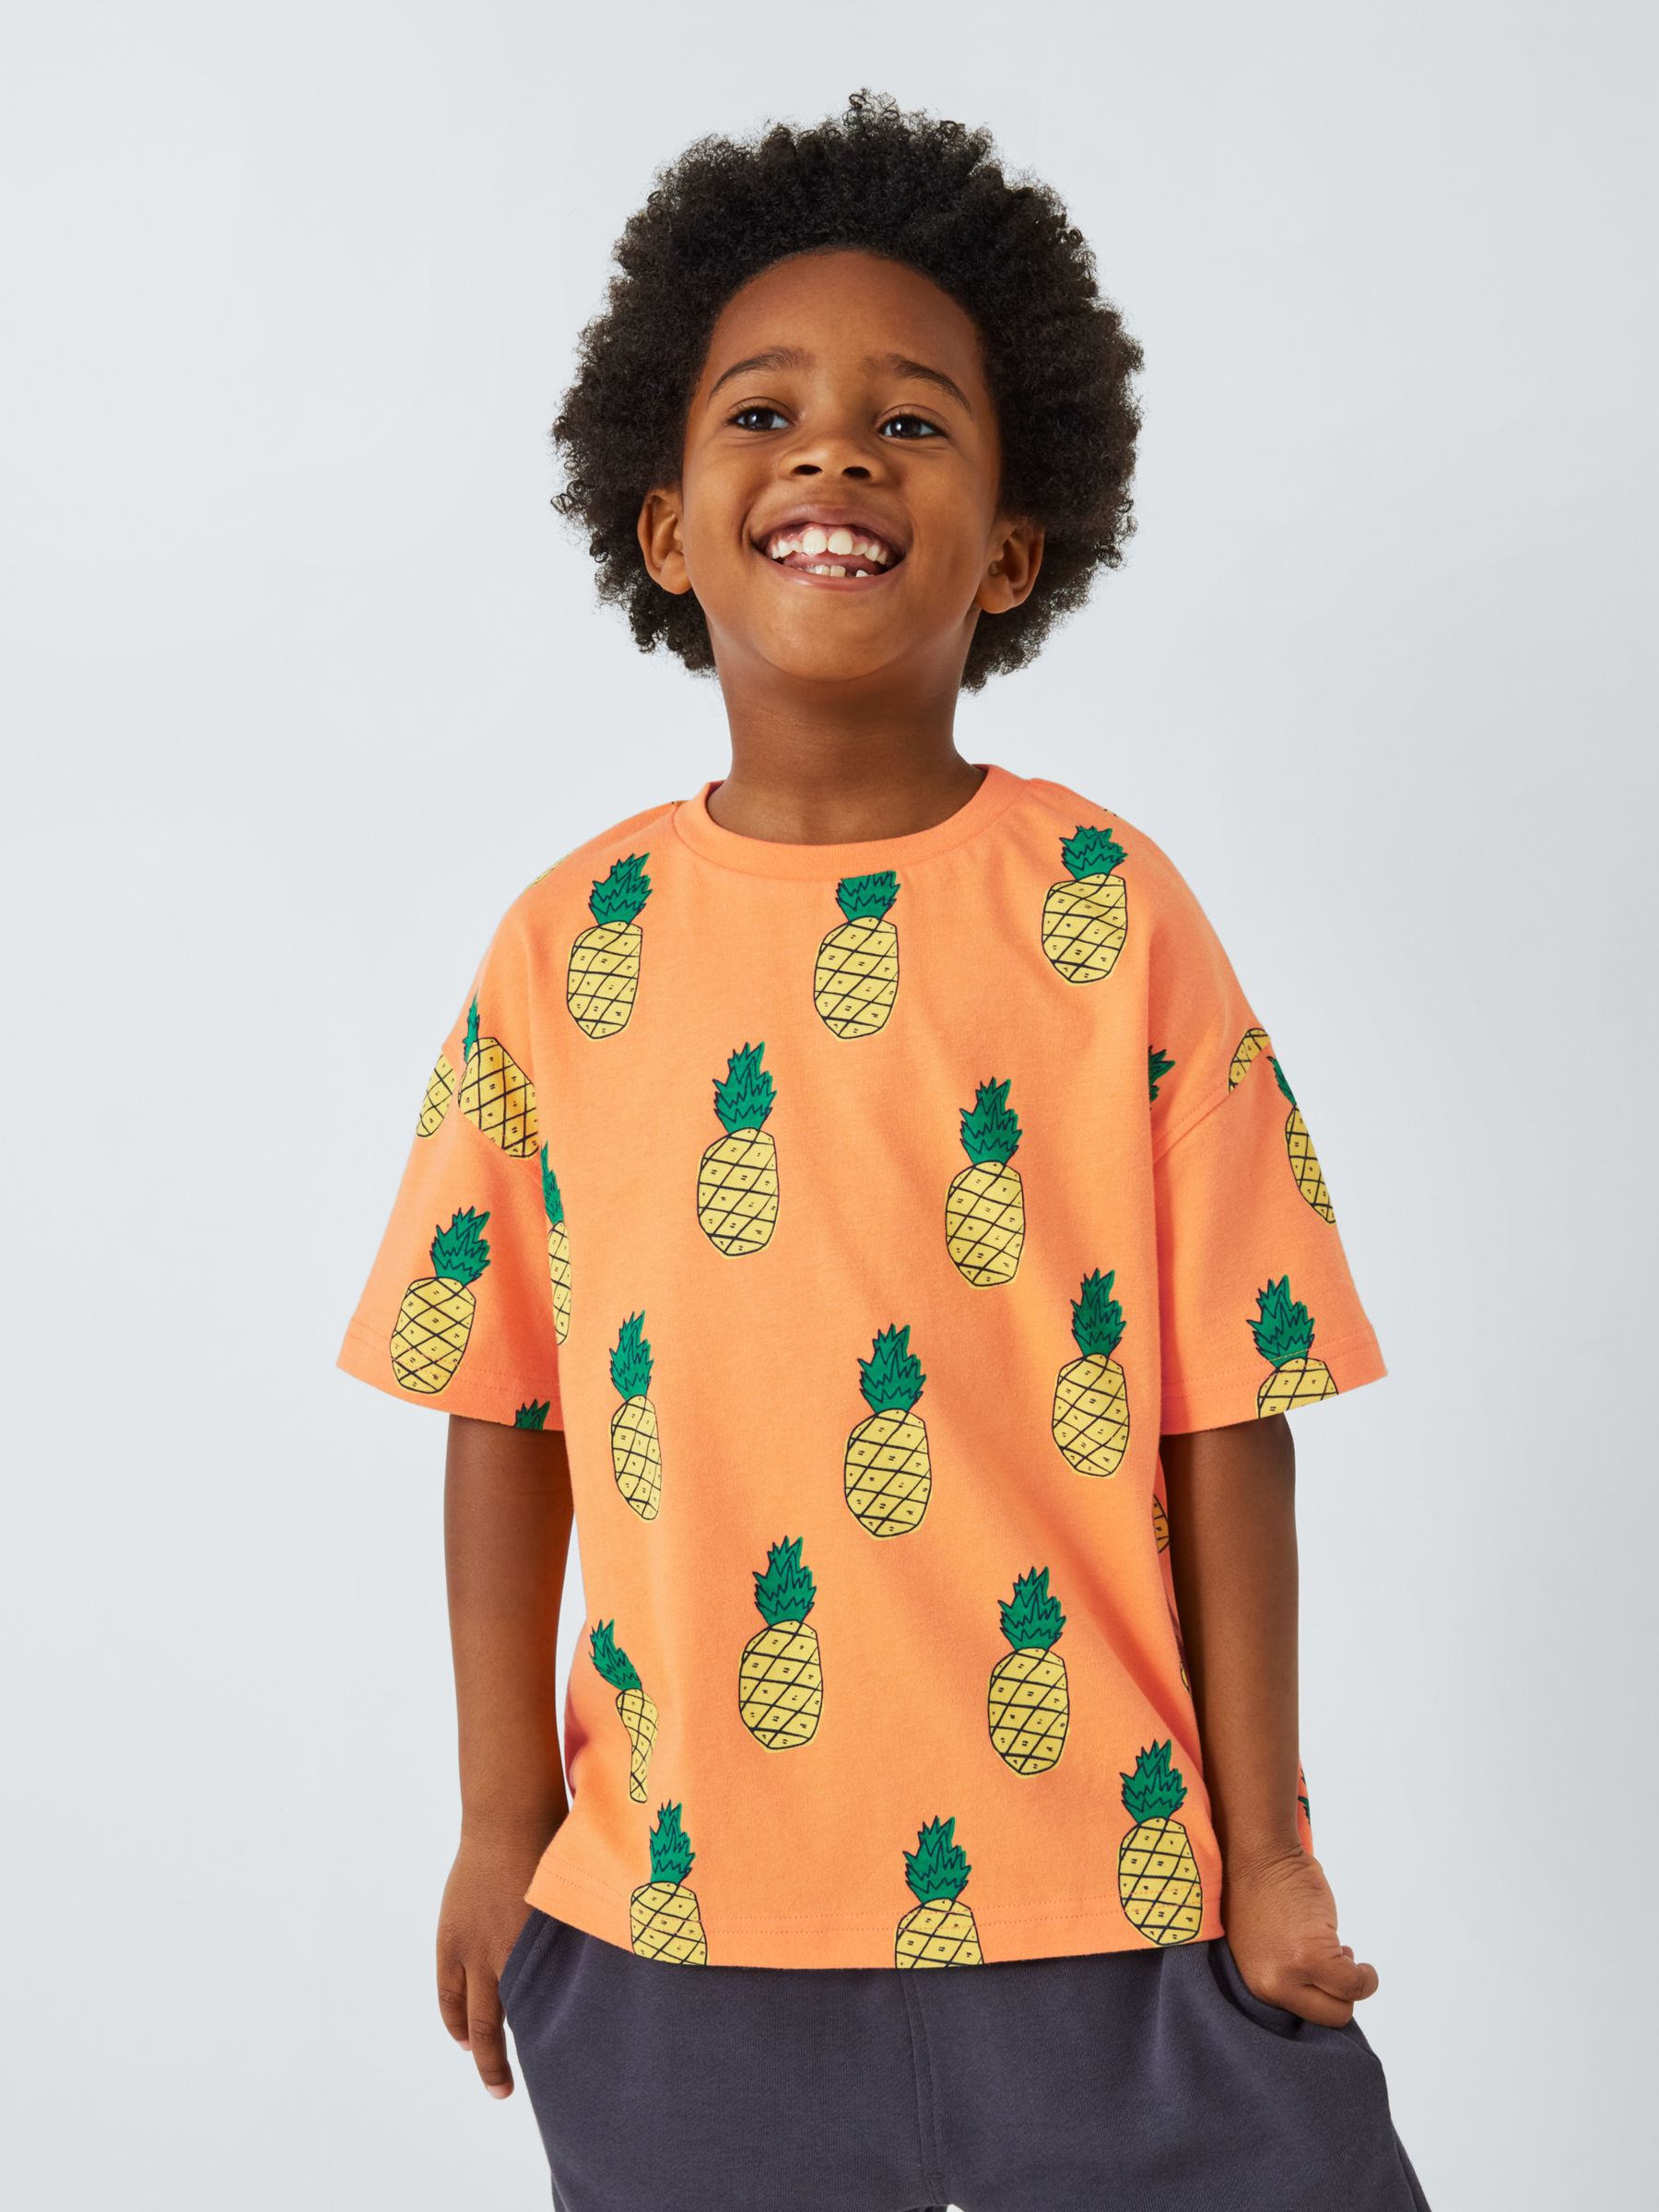 John Lewis ANYDAY Kids' Pineapple Print T-Shirt, Paprika, 12 years